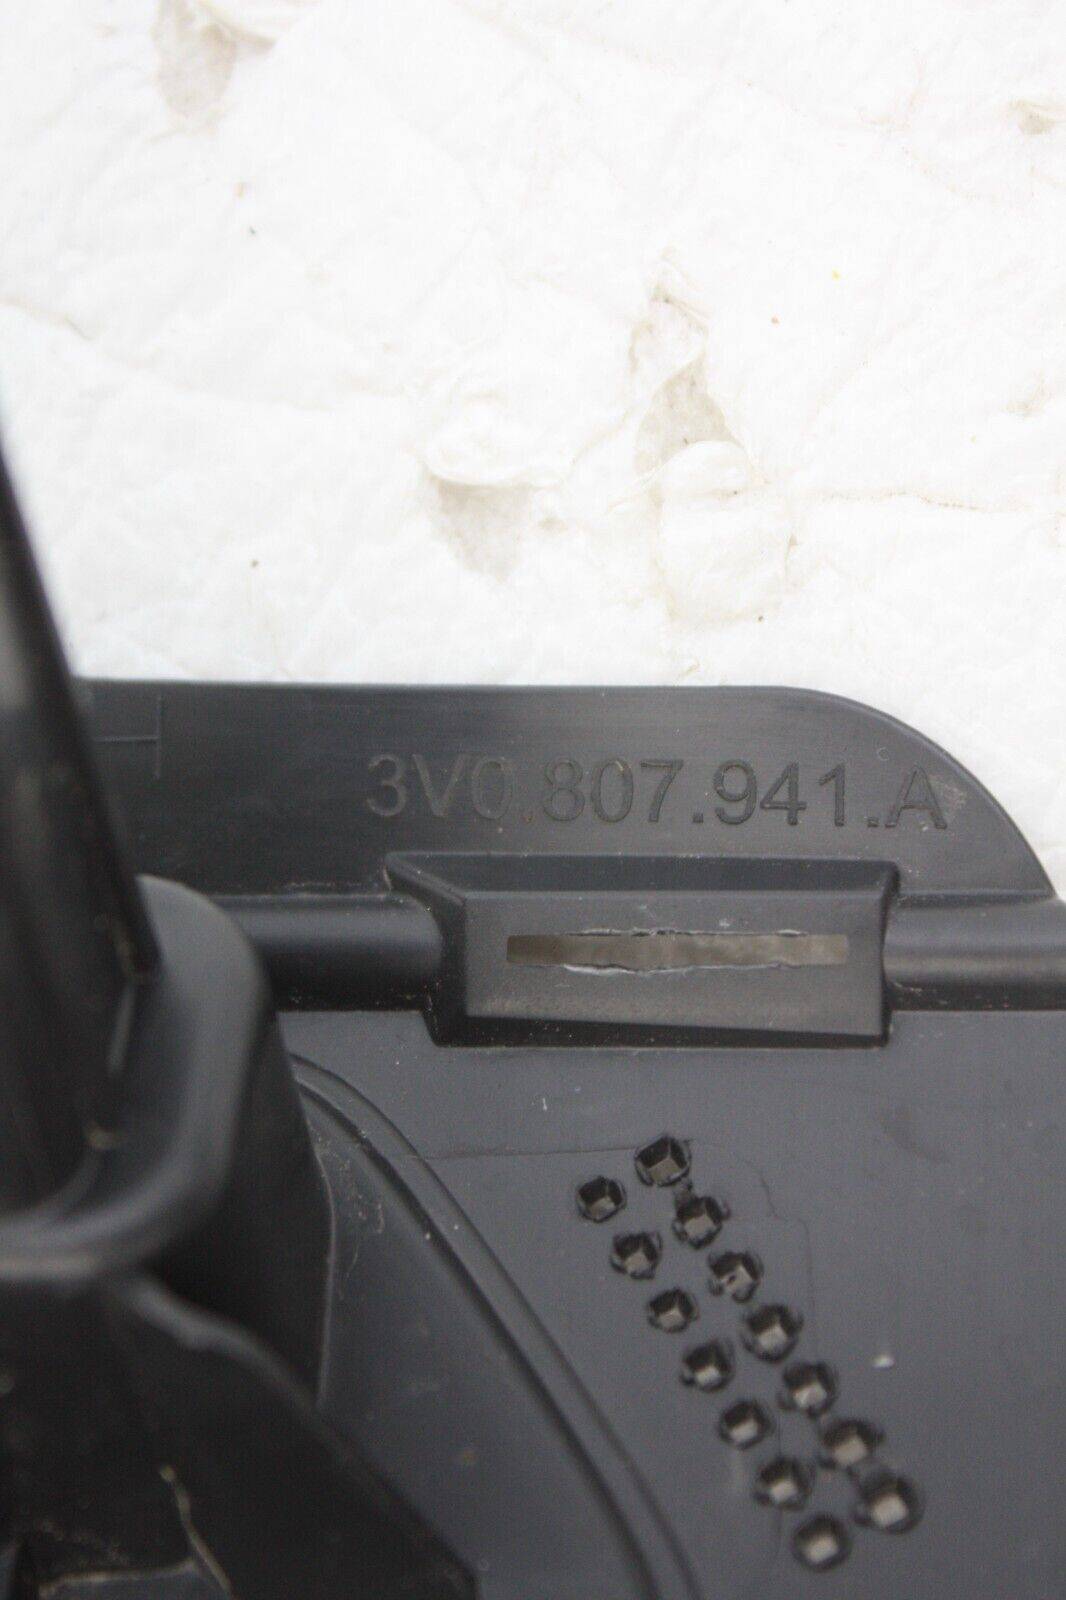 Skoda-Superb-Front-Left-Headlight-Washer-Cover-Bracket-3V0807941A-Genuine-176416962657-7